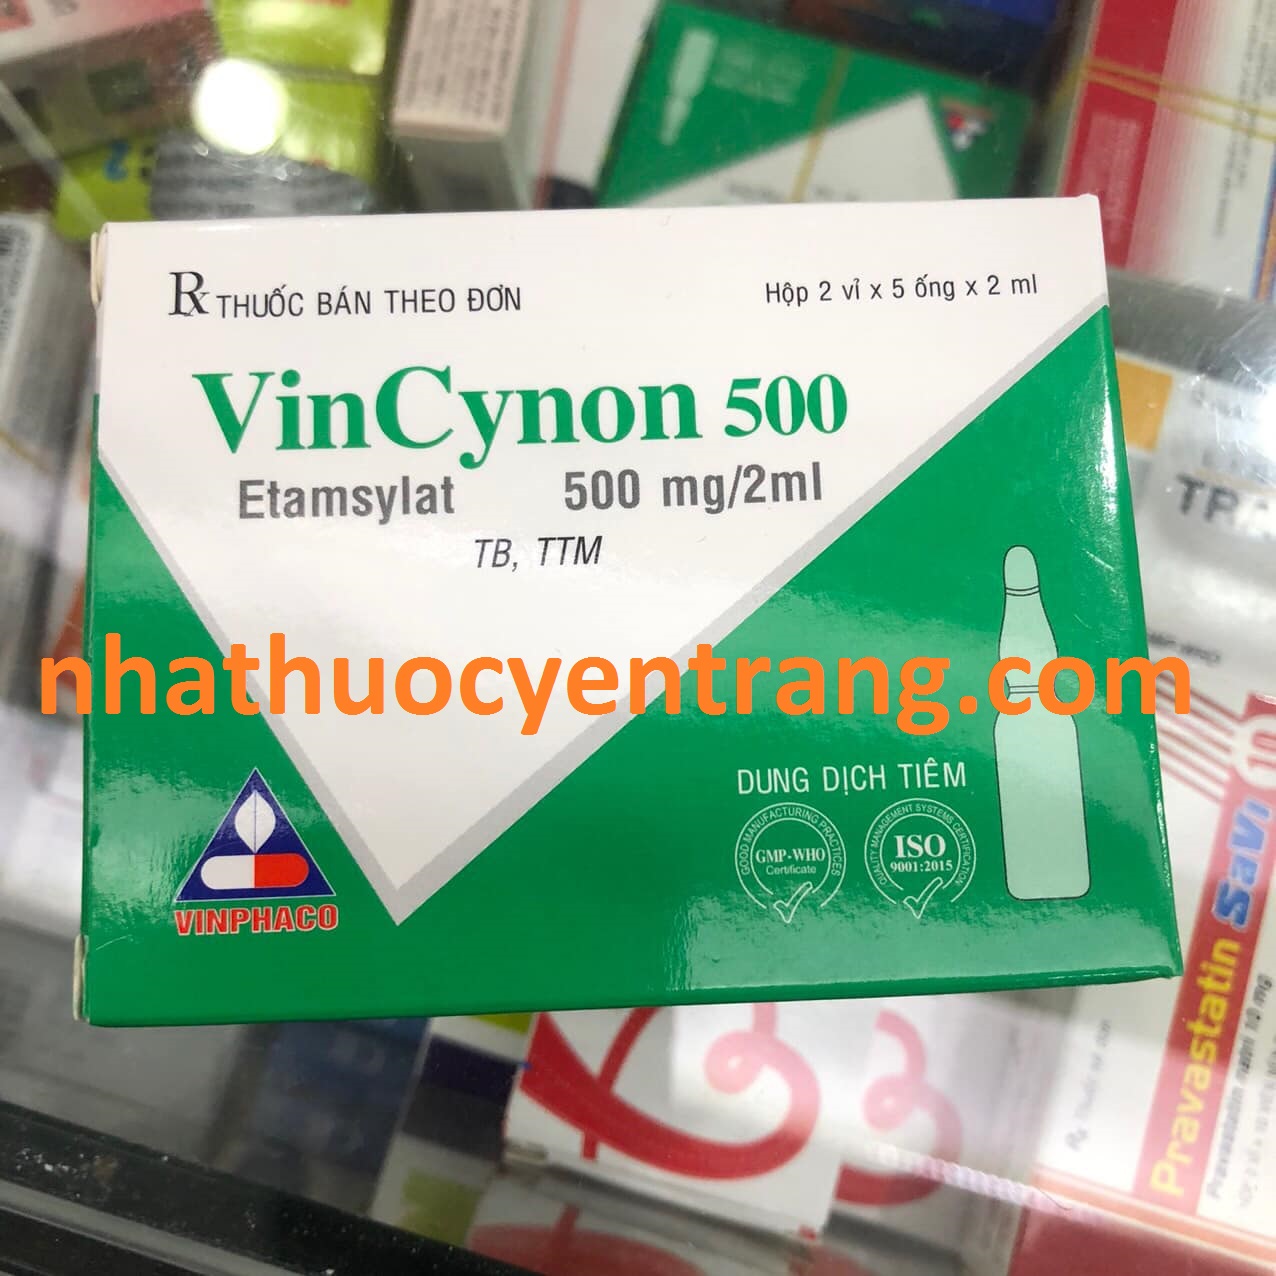 Vincynon 500mg/2ml